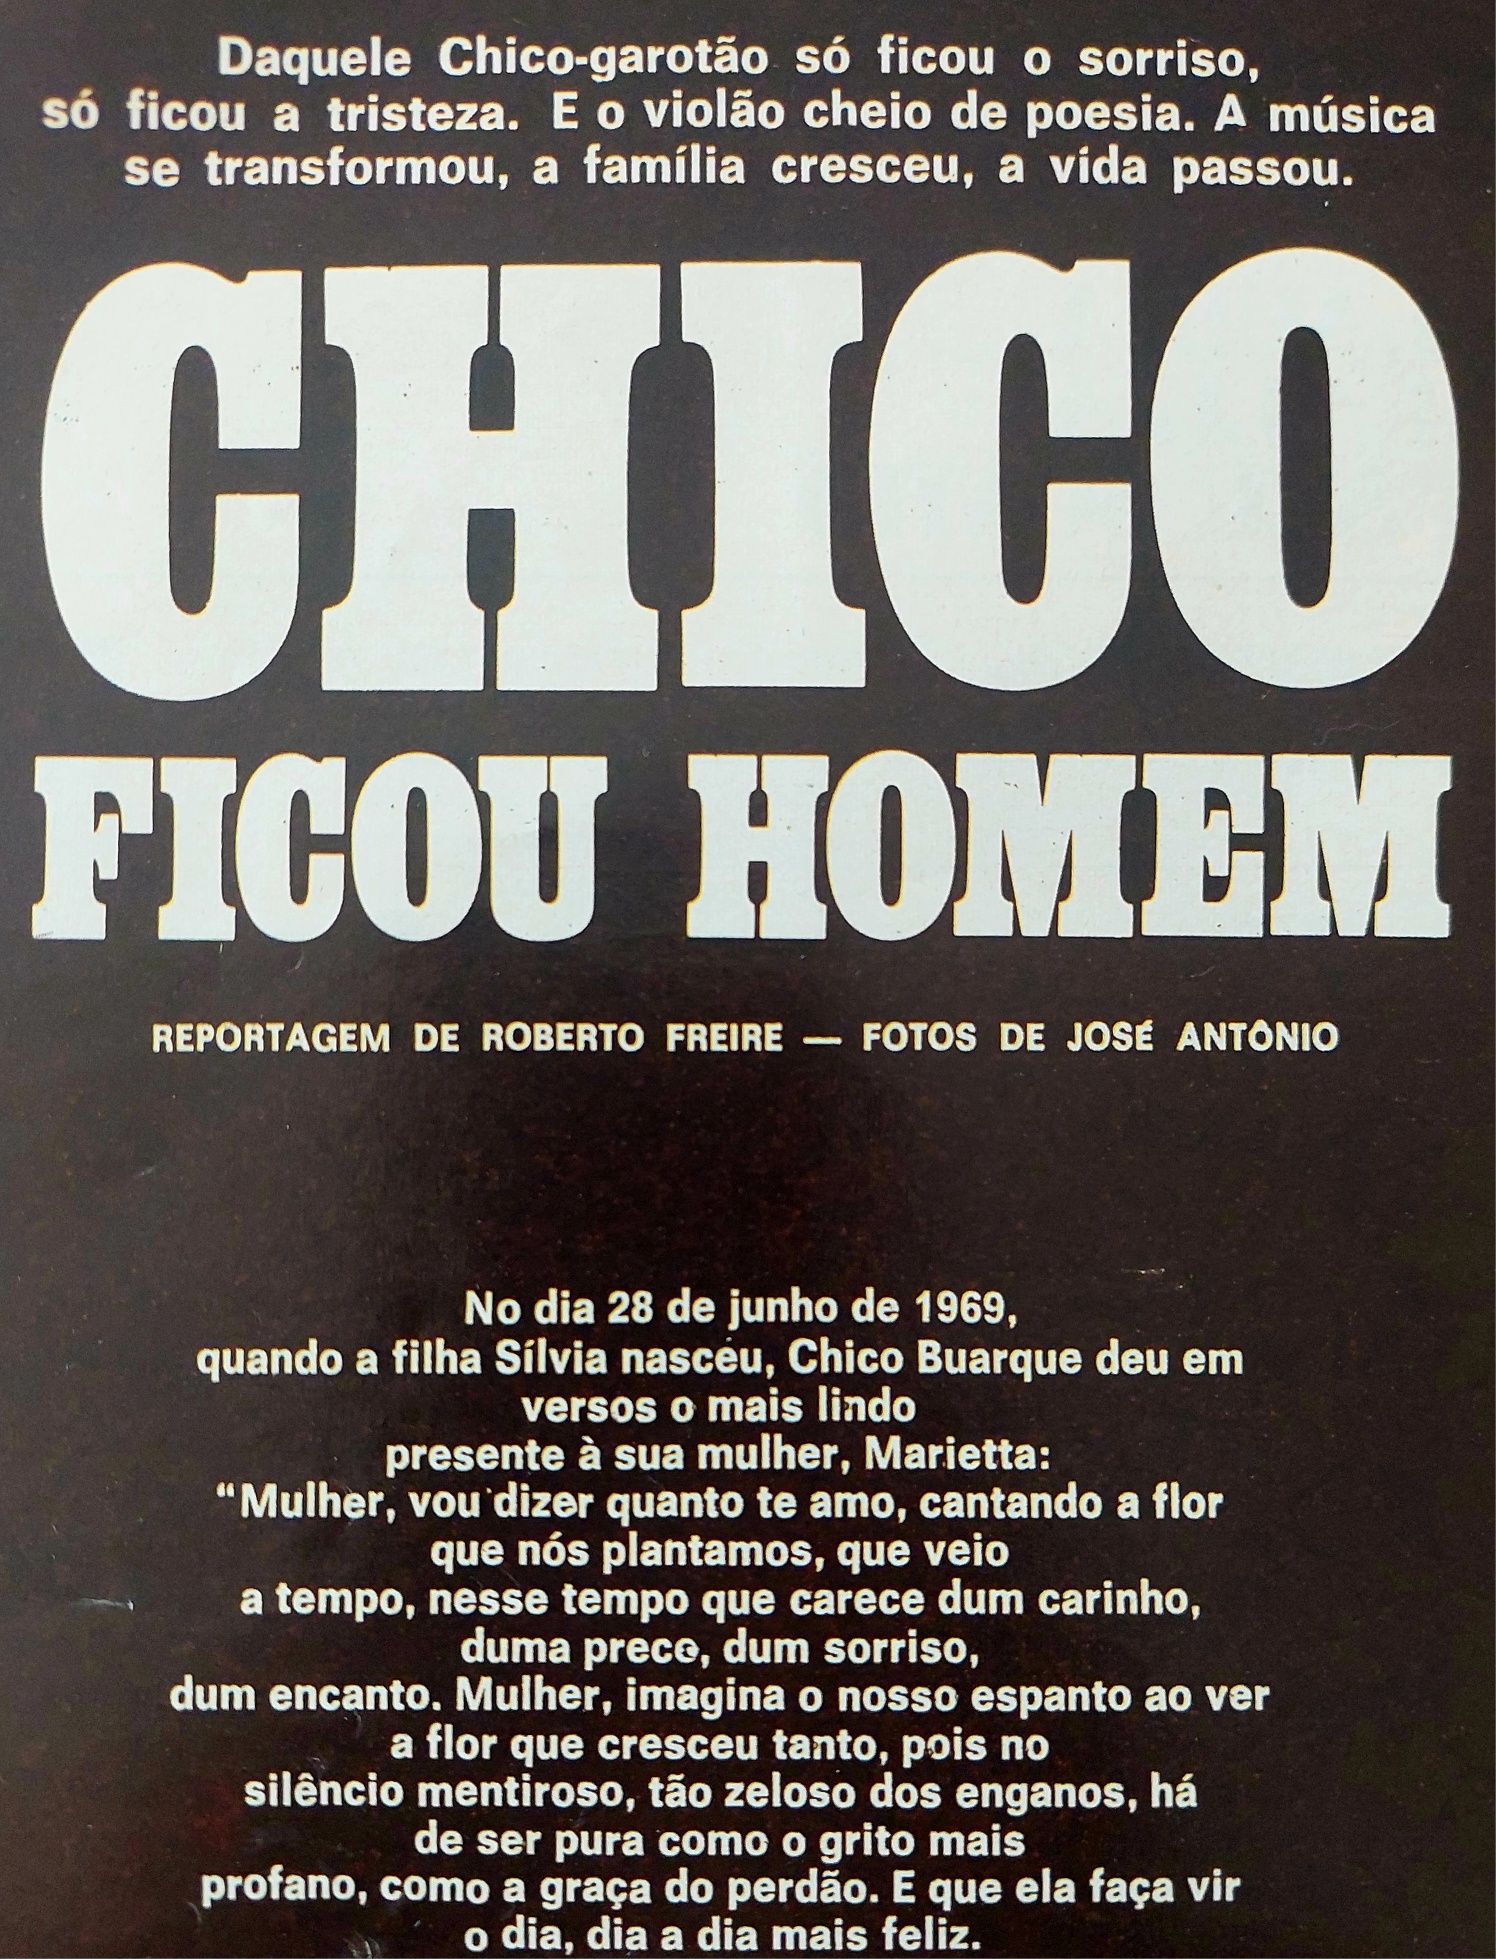 Chico Buarque 1970